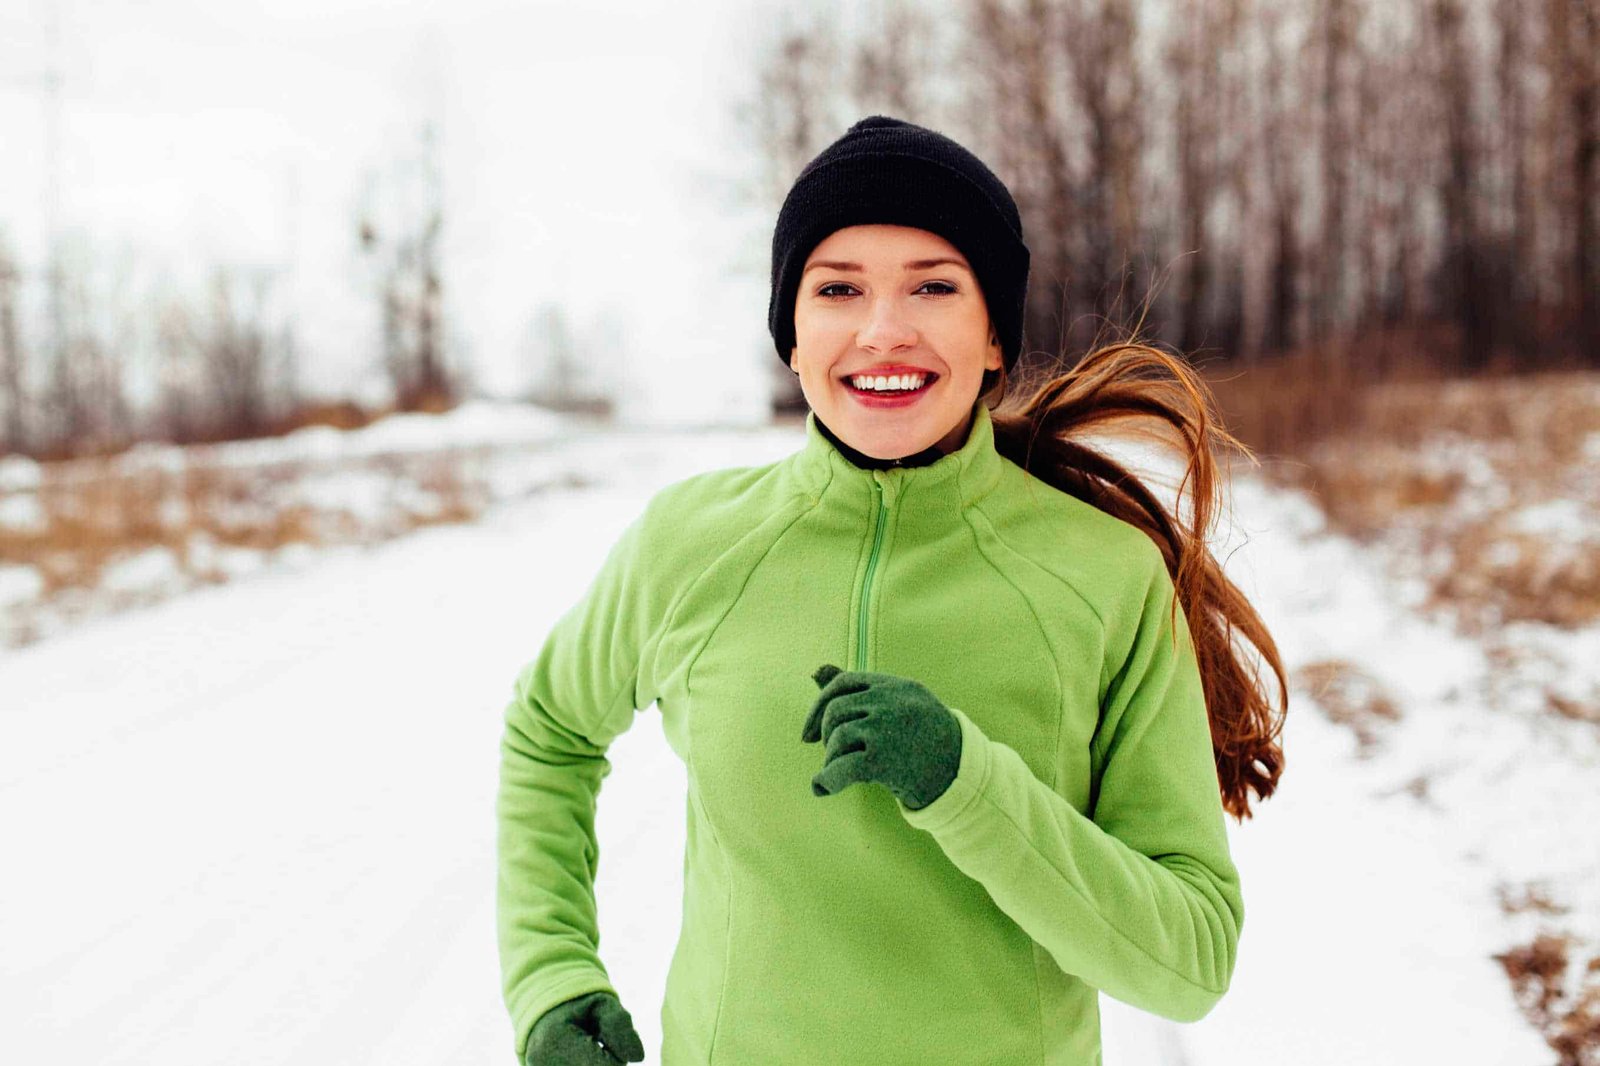 Спортивная зима. Зимний бег. Люди зимой. Физическая активность зимой. Fast cold